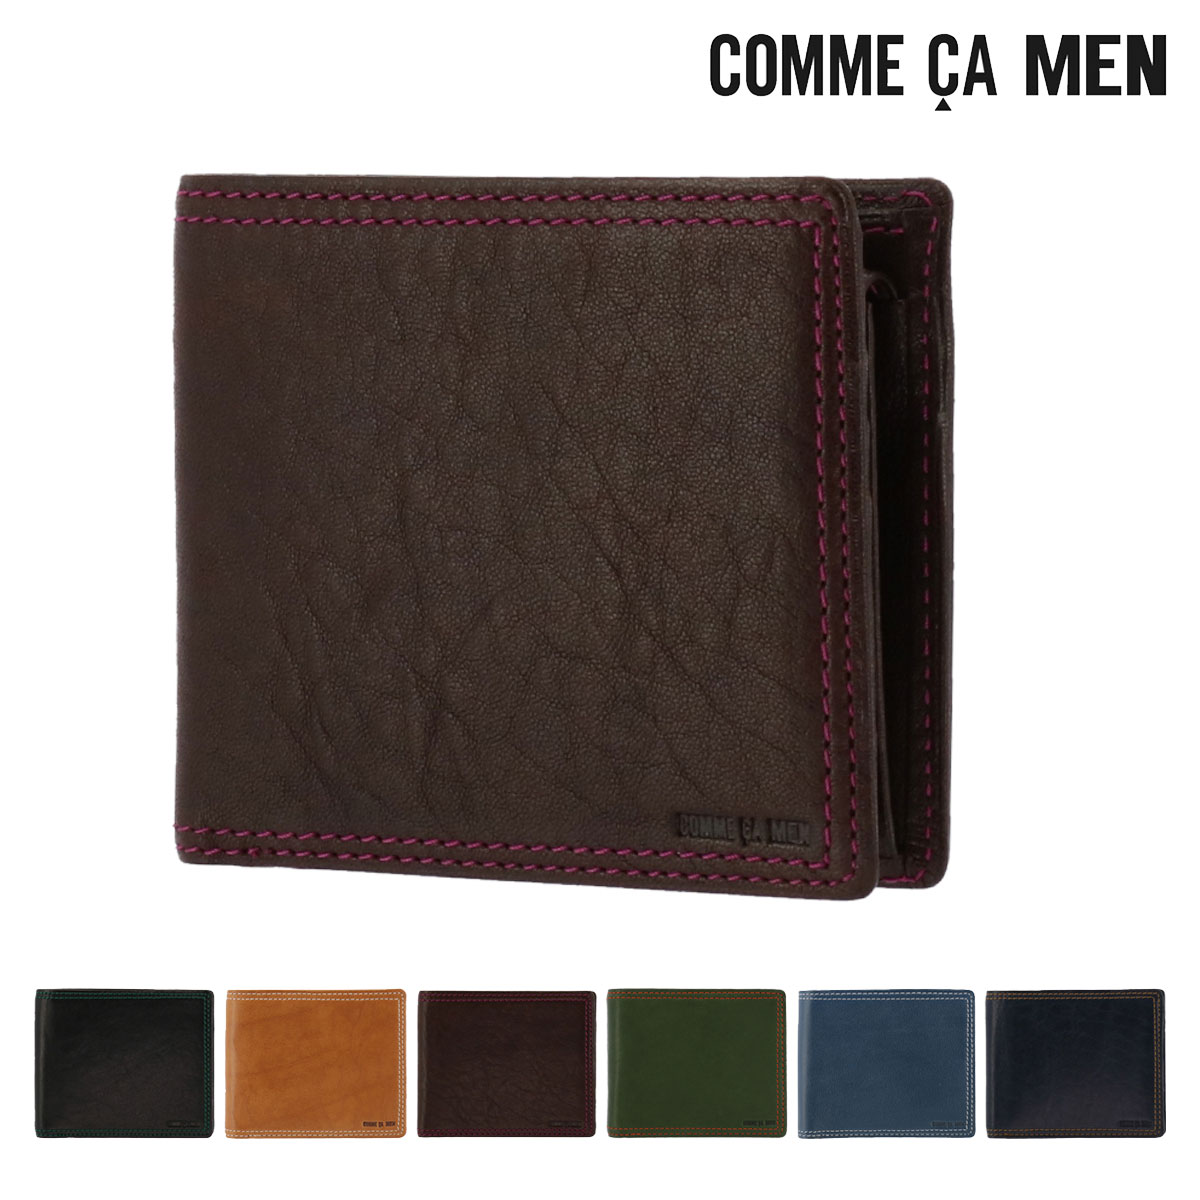 男性が持っていてかっこいい財布特集|COMME